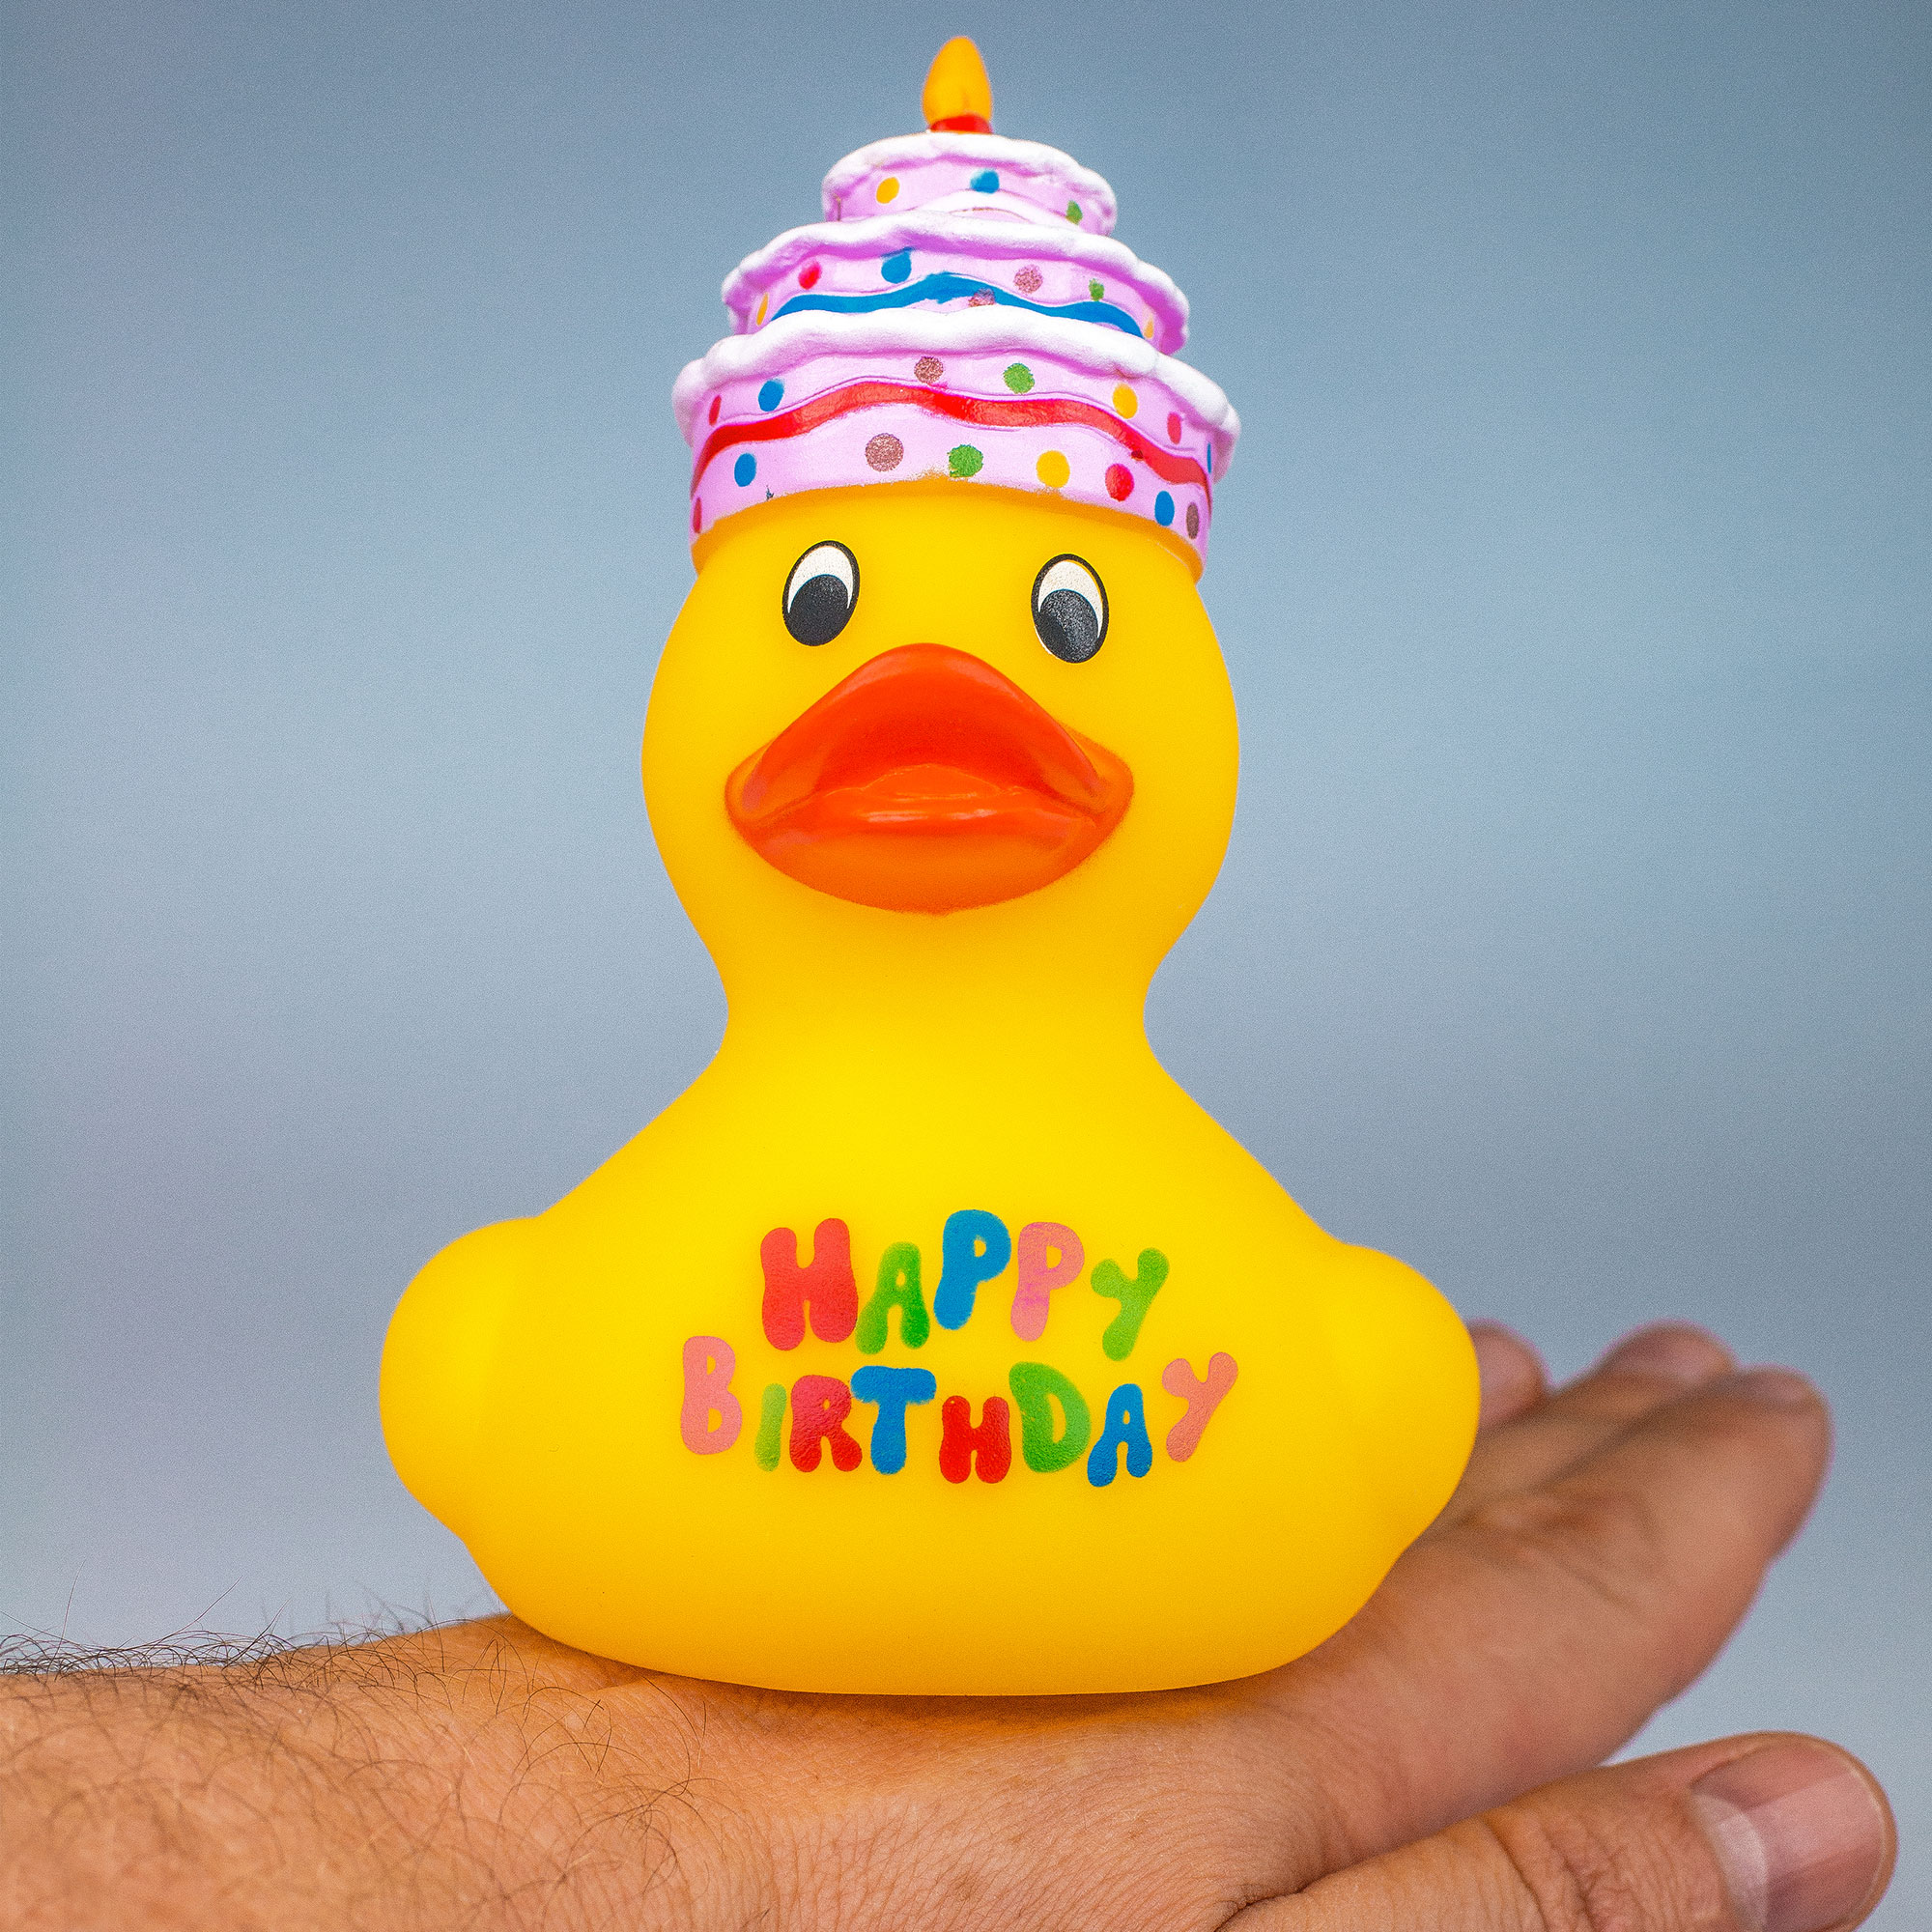 Quietscheente zum Geburtstag, Lustiges Quietscheentchen als Geburtstagsgeschenk, Badeente mit Schriftzug Happy Birthday, Gummiente für die Badewanne